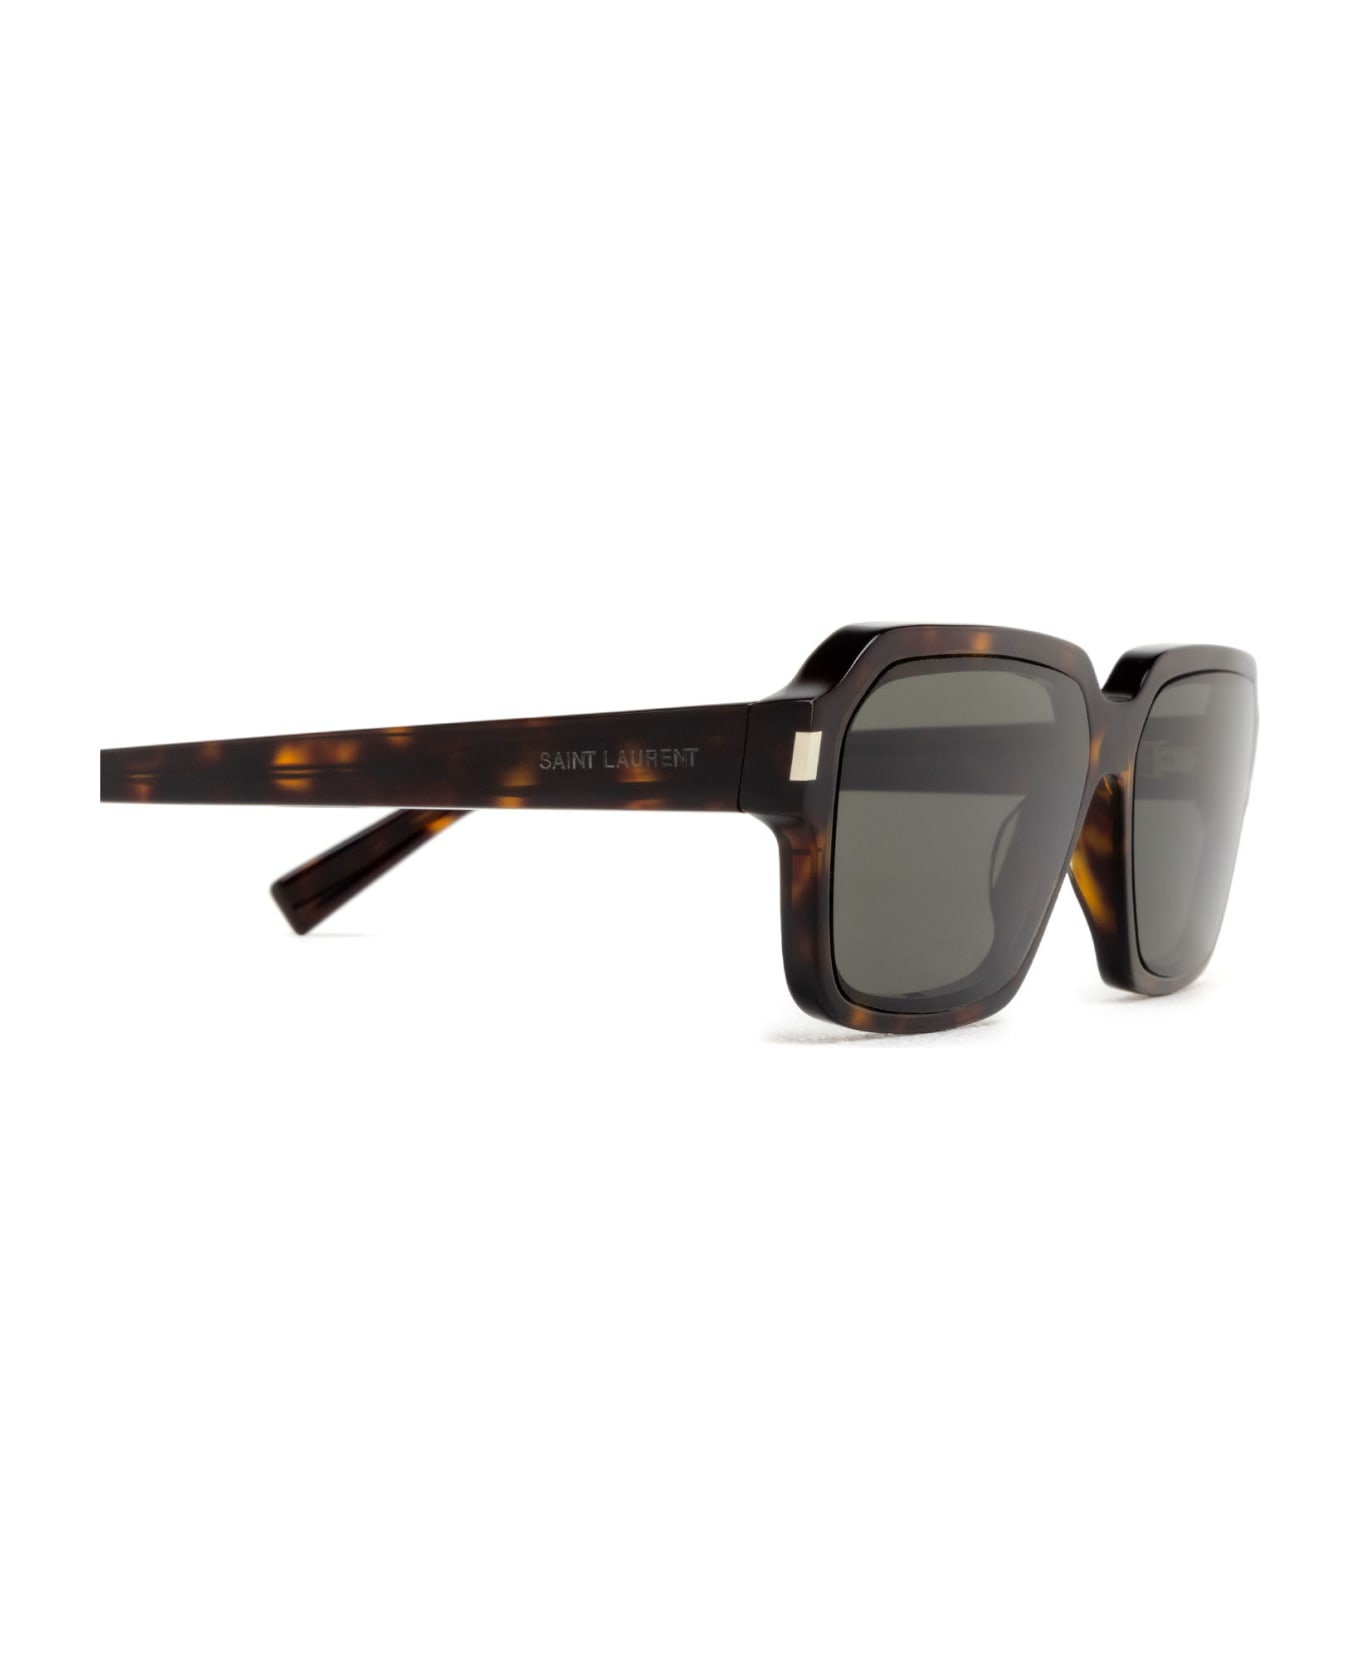 Saint Laurent Eyewear Sl 611 Havana Sunglasses - Havana